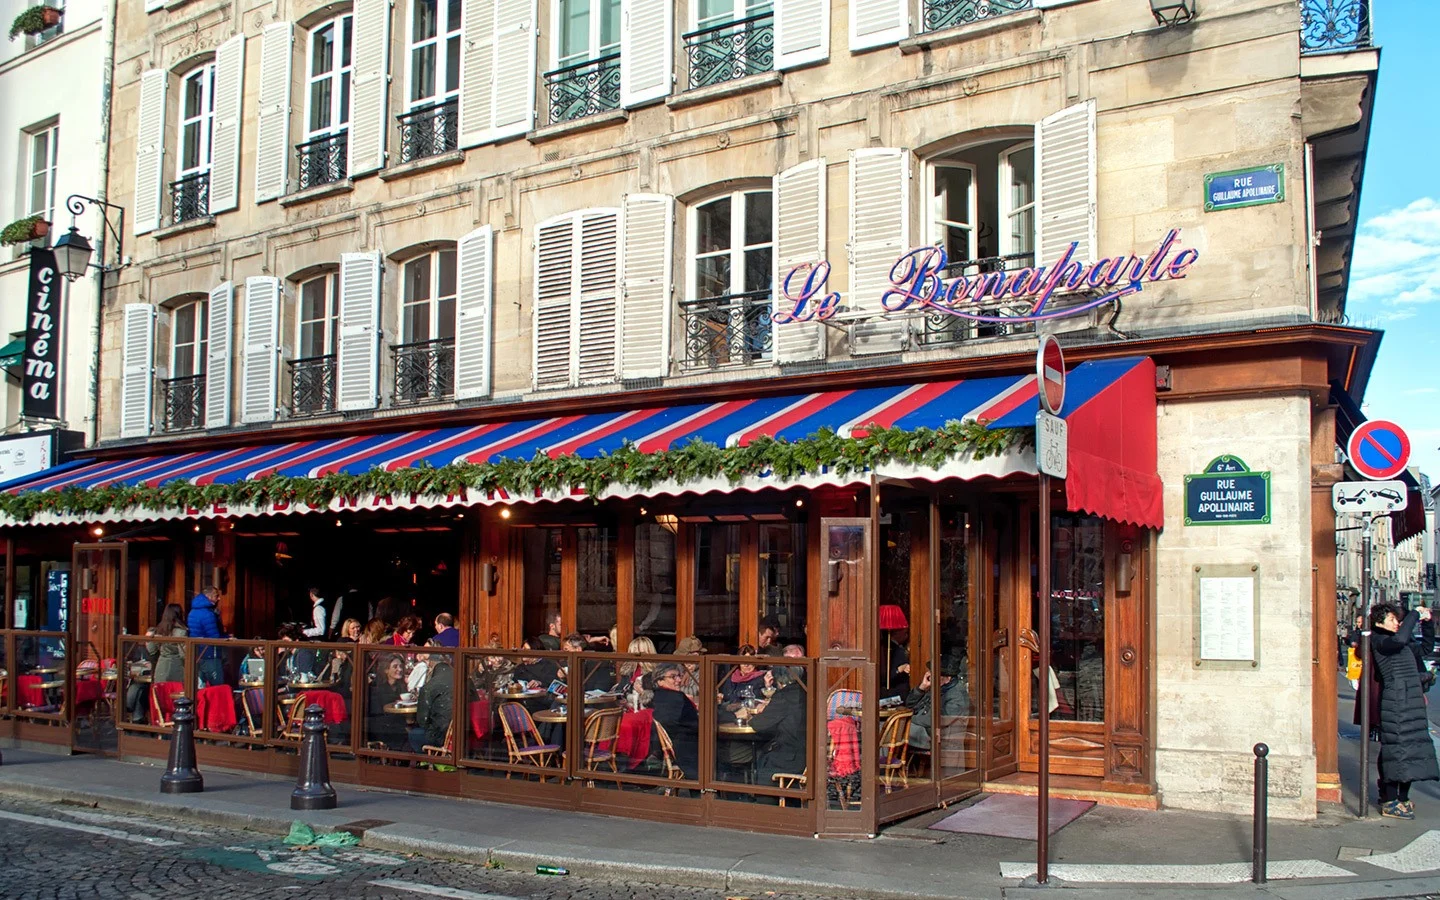 Bonaparte Café in St Germain, Paris' Left Bank